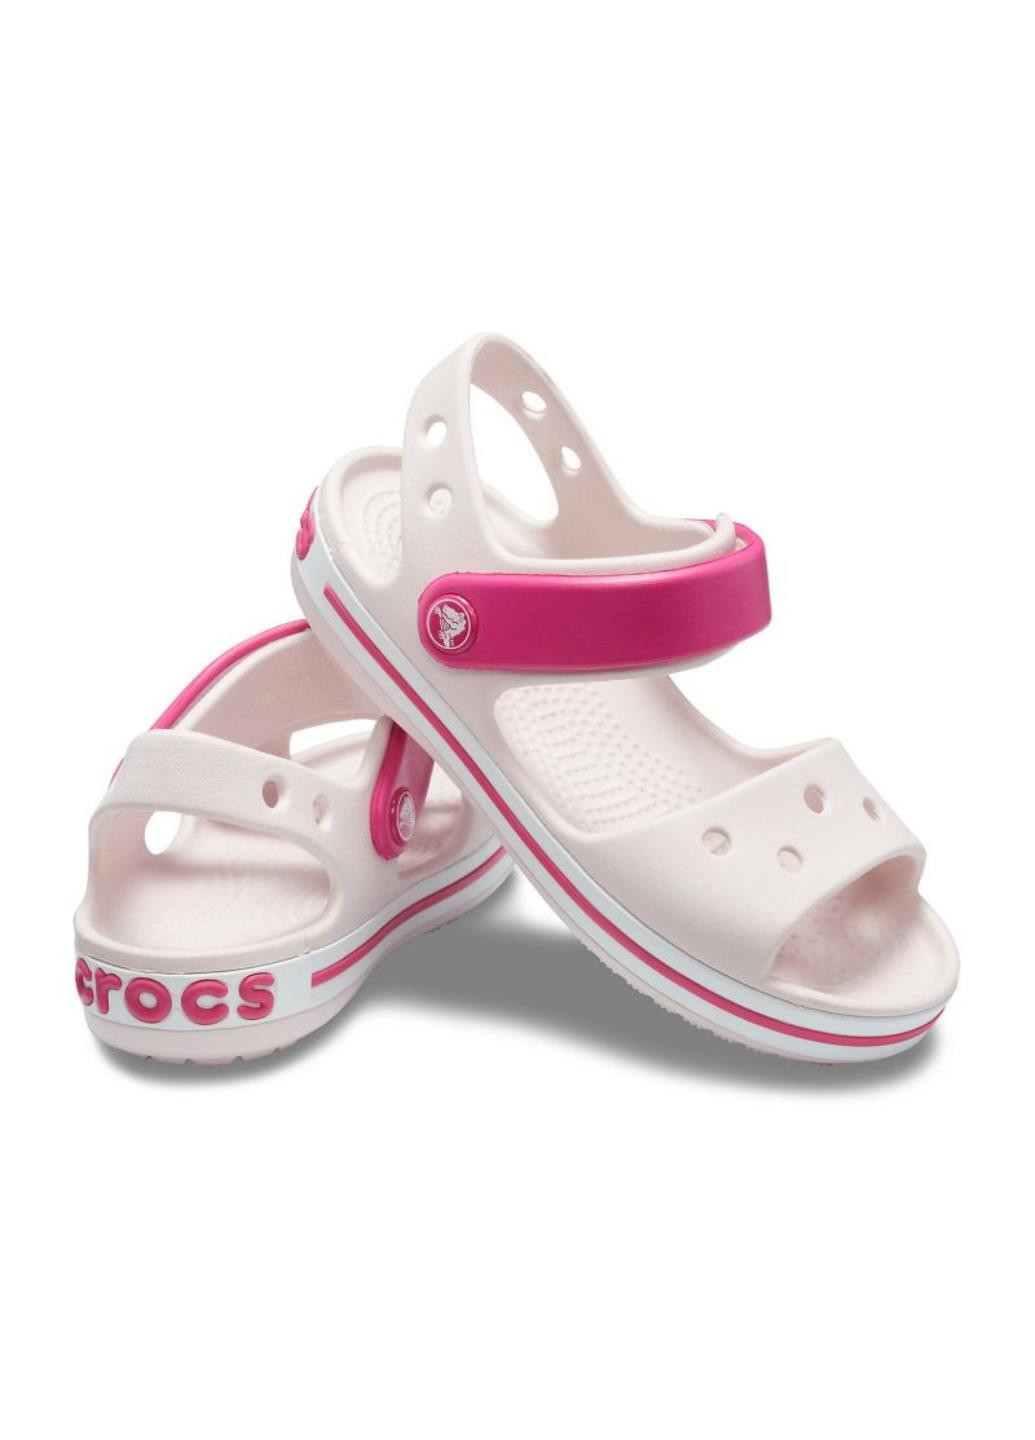 Крокс Дитячі Crocband Sandal Crocs Sandal Kids напис світло-рожева спортивна